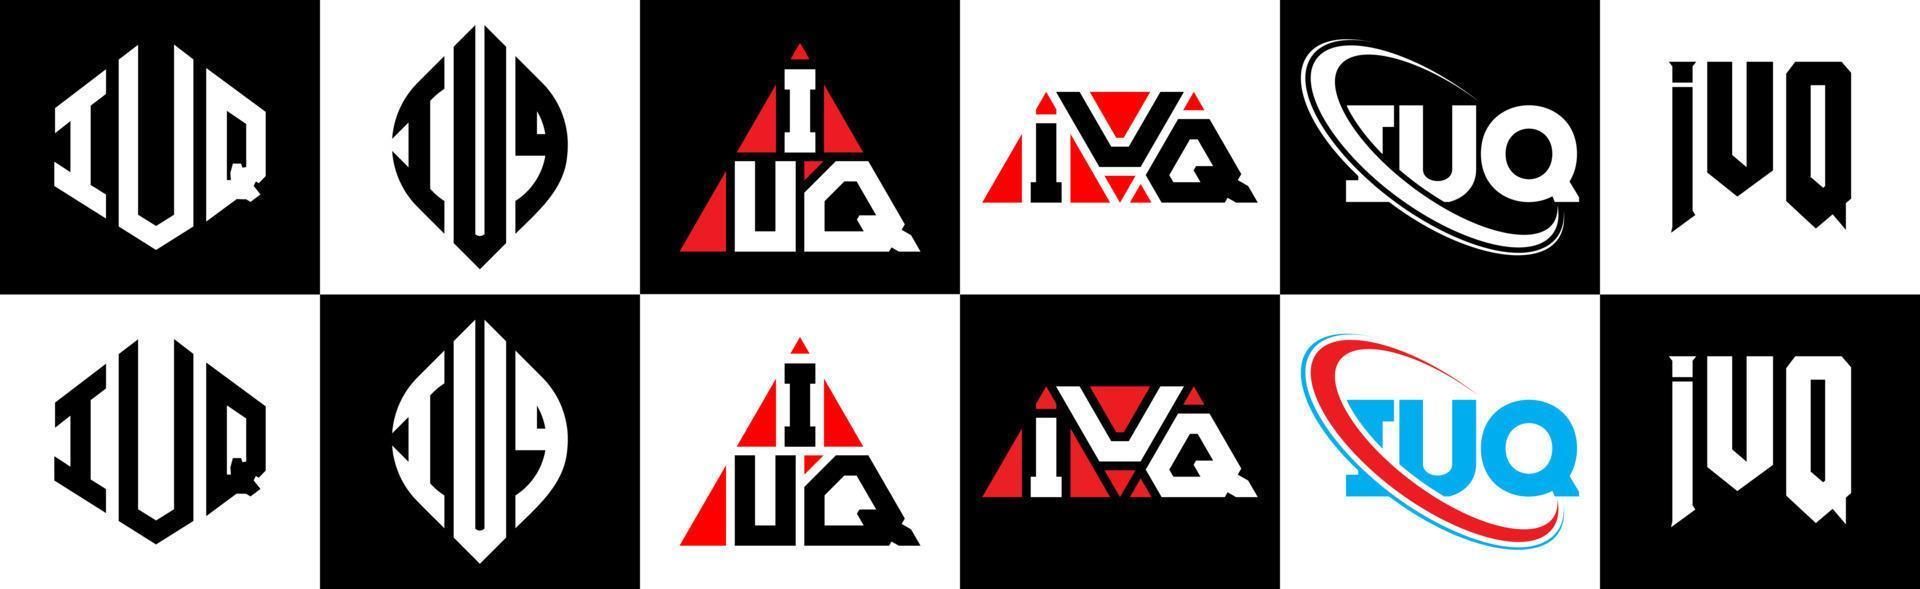 Diseño de logotipo de letra iuq en seis estilos. iuq polígono, círculo, triángulo, hexágono, estilo plano y simple con logotipo de letra de variación de color blanco y negro en una mesa de trabajo. logotipo minimalista y clásico de iuq vector